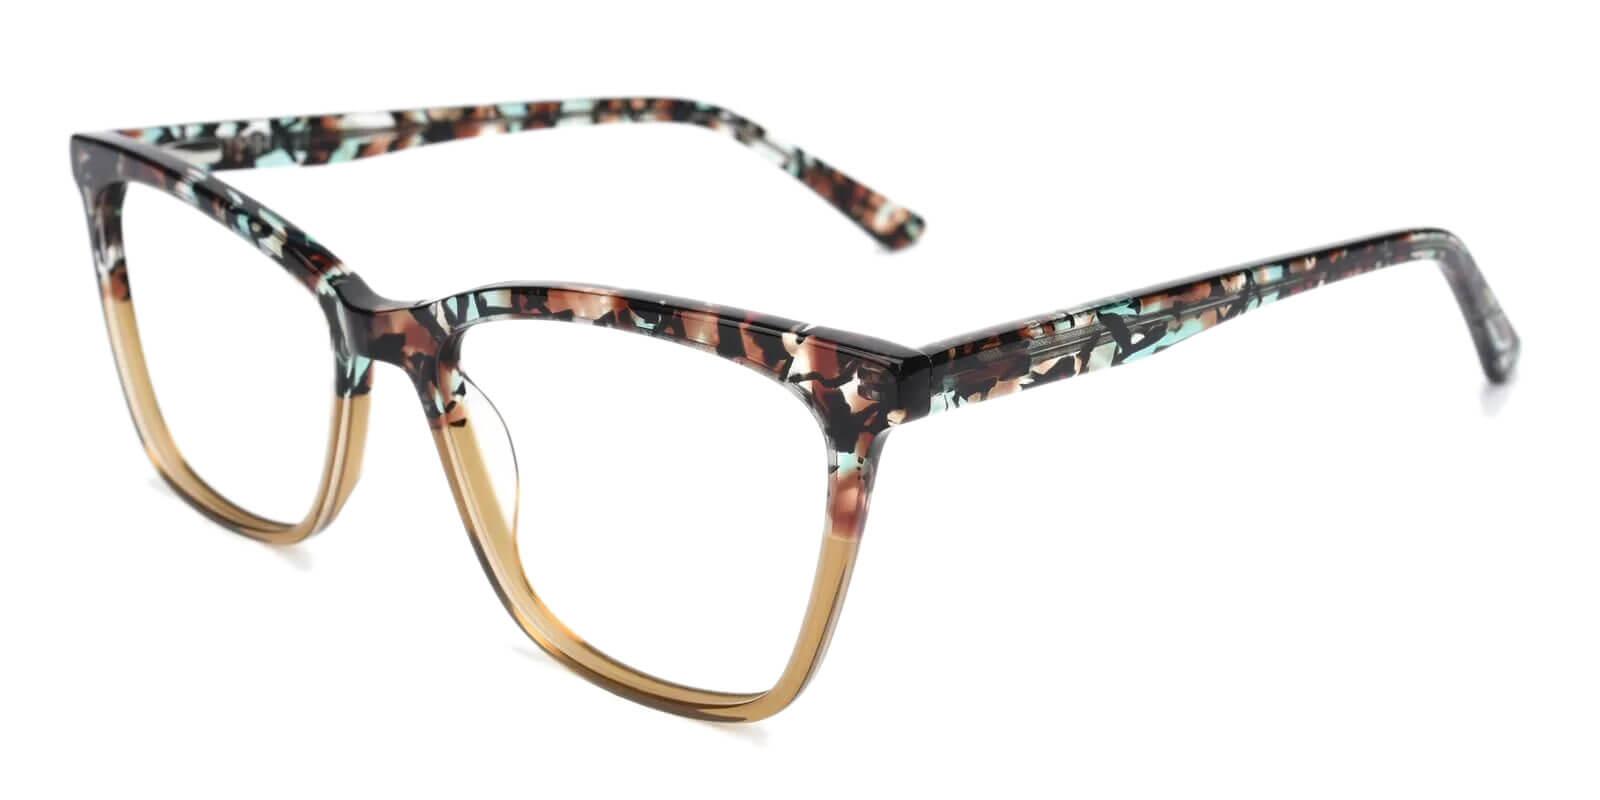 Masser Yellow Acetate Eyeglasses , UniversalBridgeFit Frames from ABBE Glasses